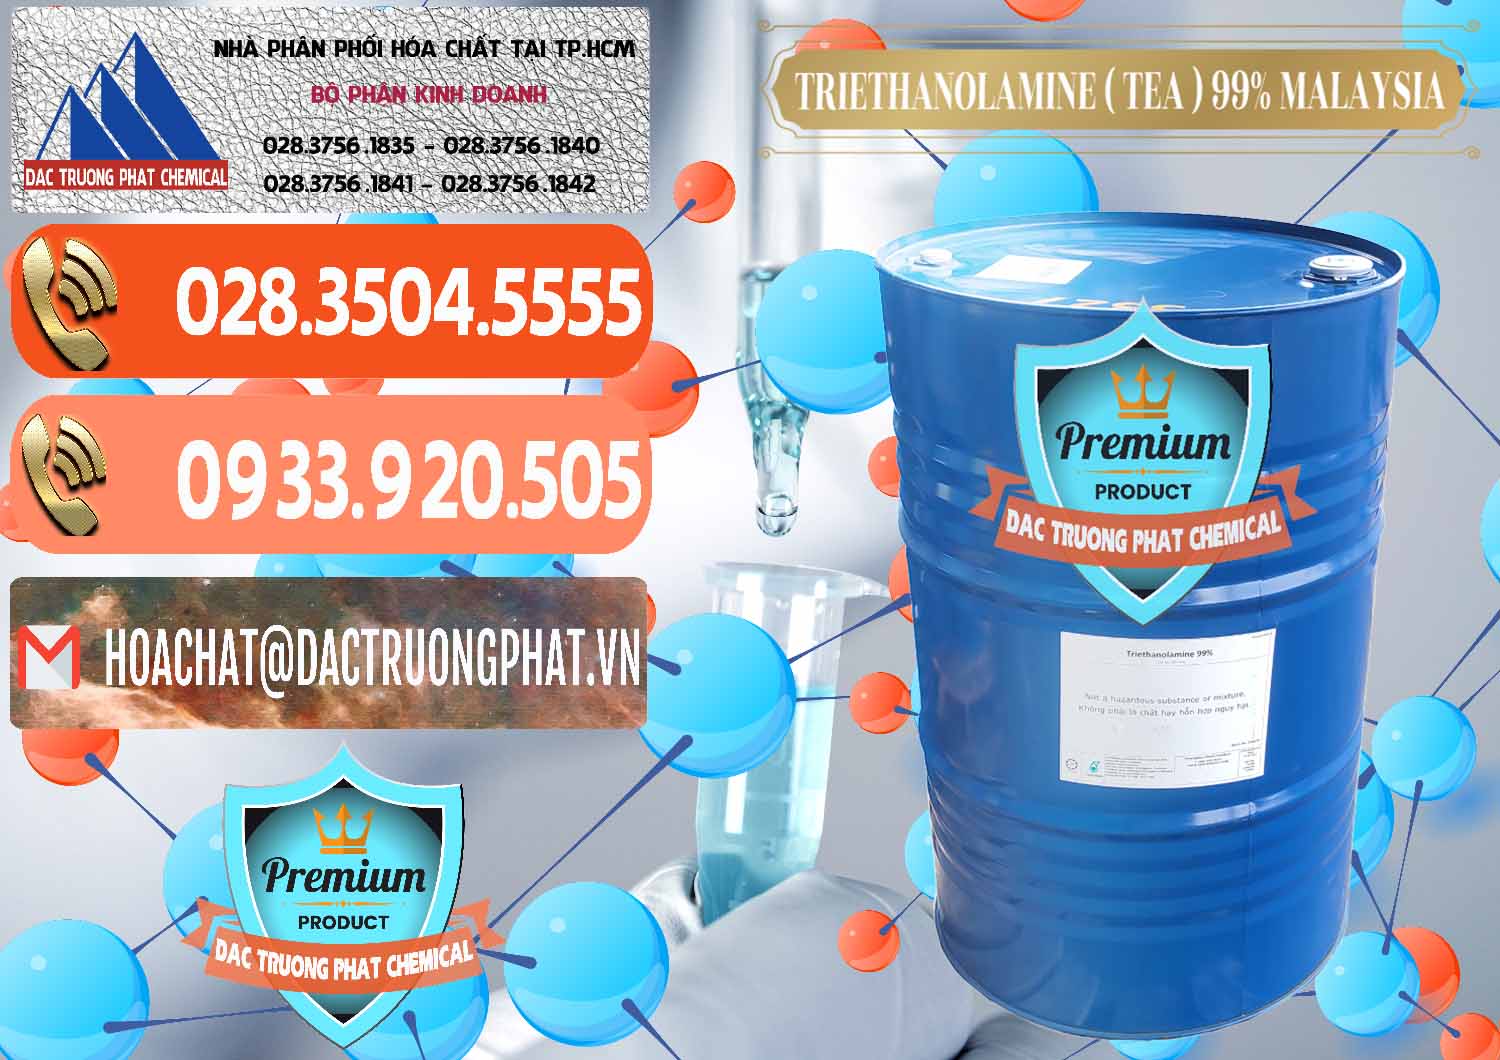 Cty chuyên cung ứng & bán TEA - Triethanolamine 99% Mã Lai Malaysia - 0323 - Cty phân phối & cung cấp hóa chất tại TP.HCM - hoachatmientay.com